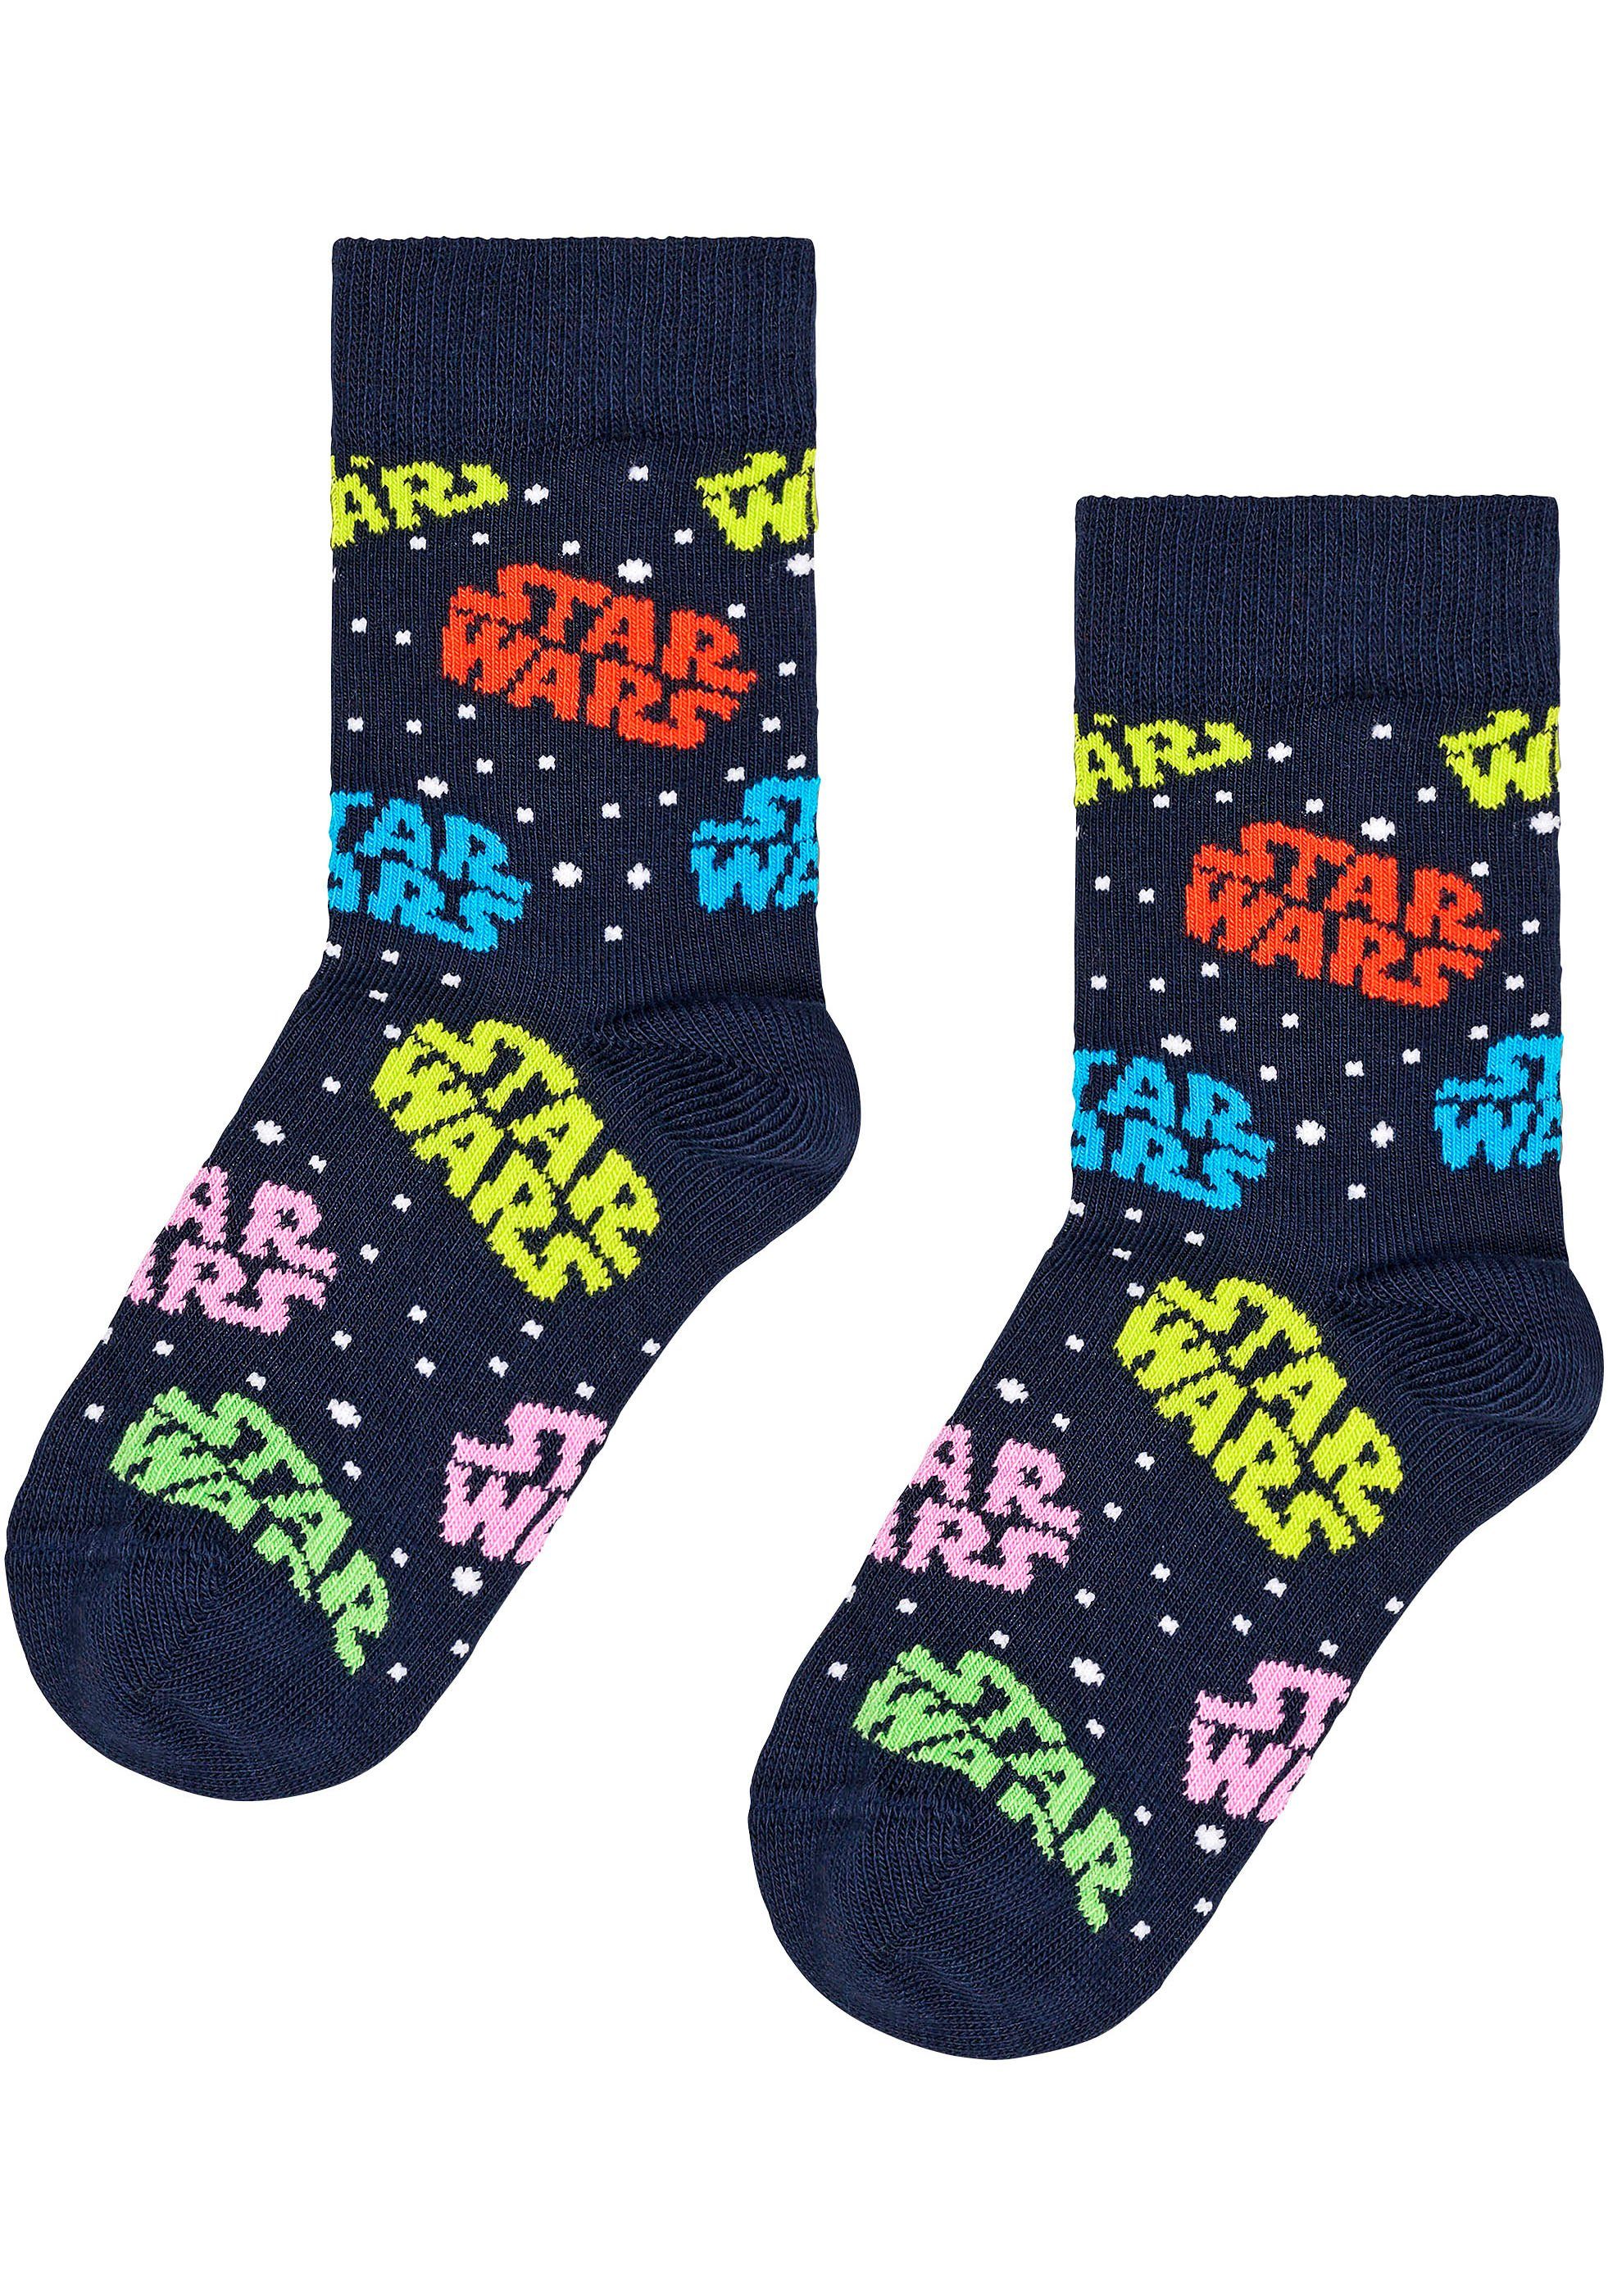 Happy Socks Socken Star Logo Set Wars Star Darth Millennium Gift Wars (3-Paar) & Vader Falcon